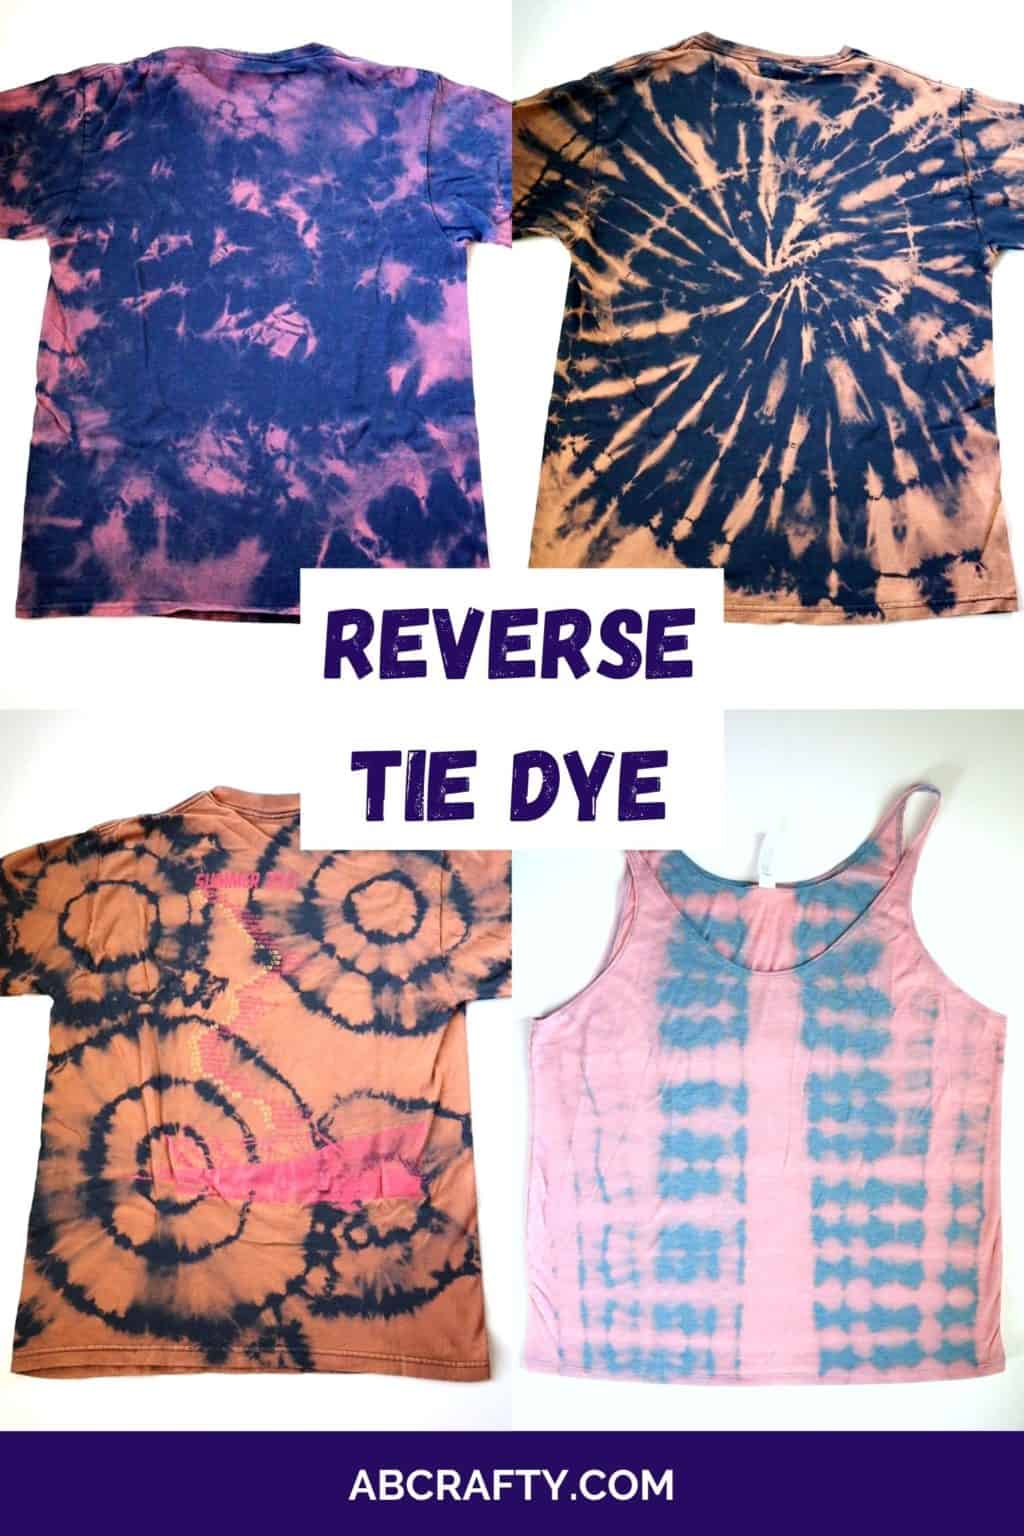 is-tie-dye-just-fabric-dye